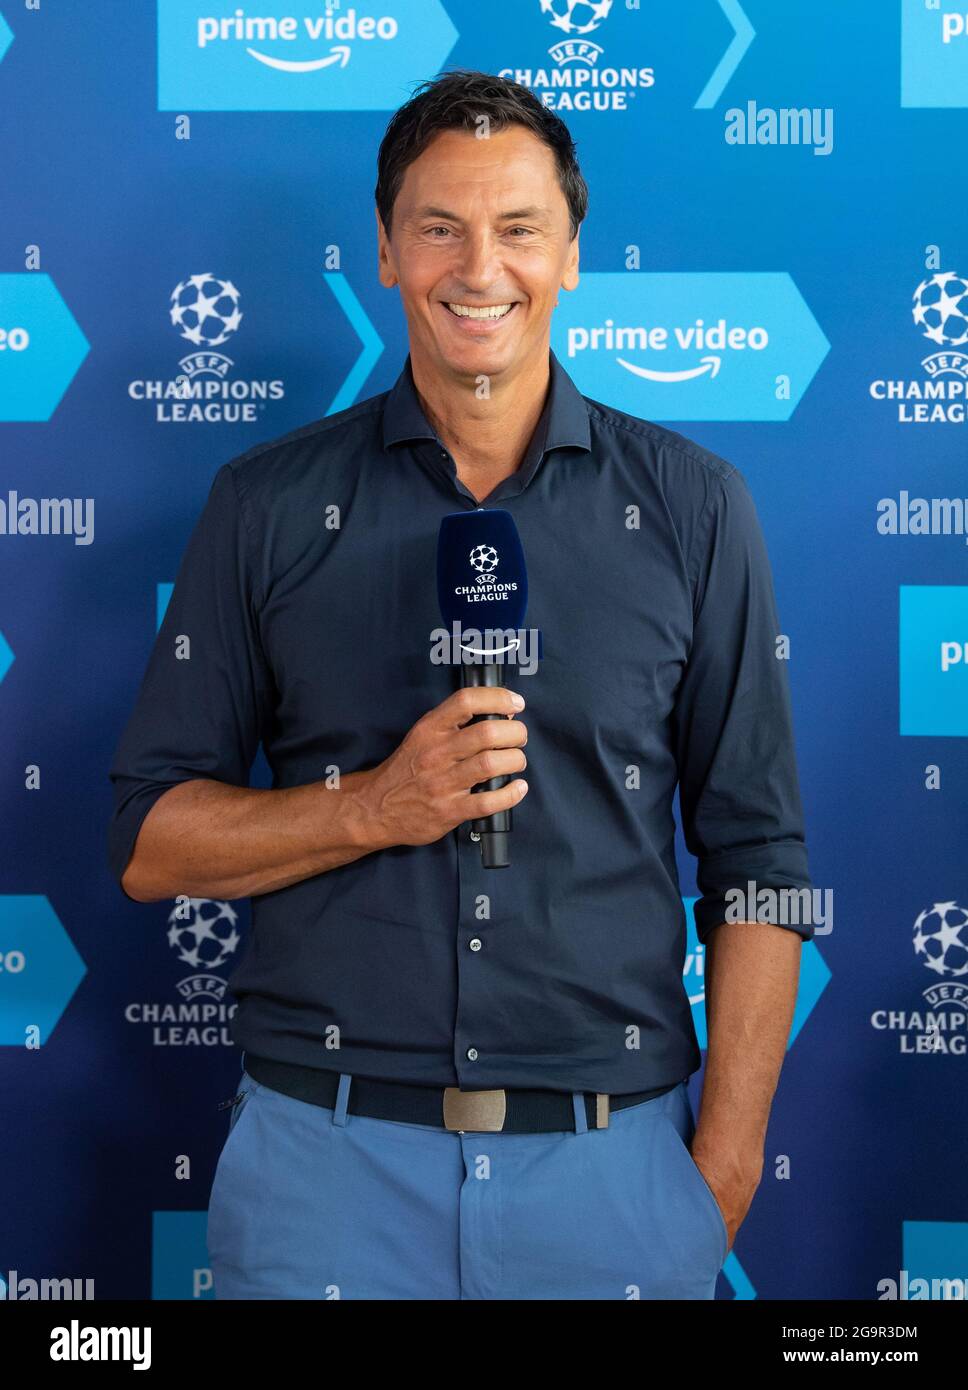 Munich, Alemania. 27th de julio de 2021. Sebastian Hellmann, presentador,  participa en una conferencia de prensa de Amazon Prime Video. Amazon  mostrará los partidos de la Champions League de la temporada 2021/22.